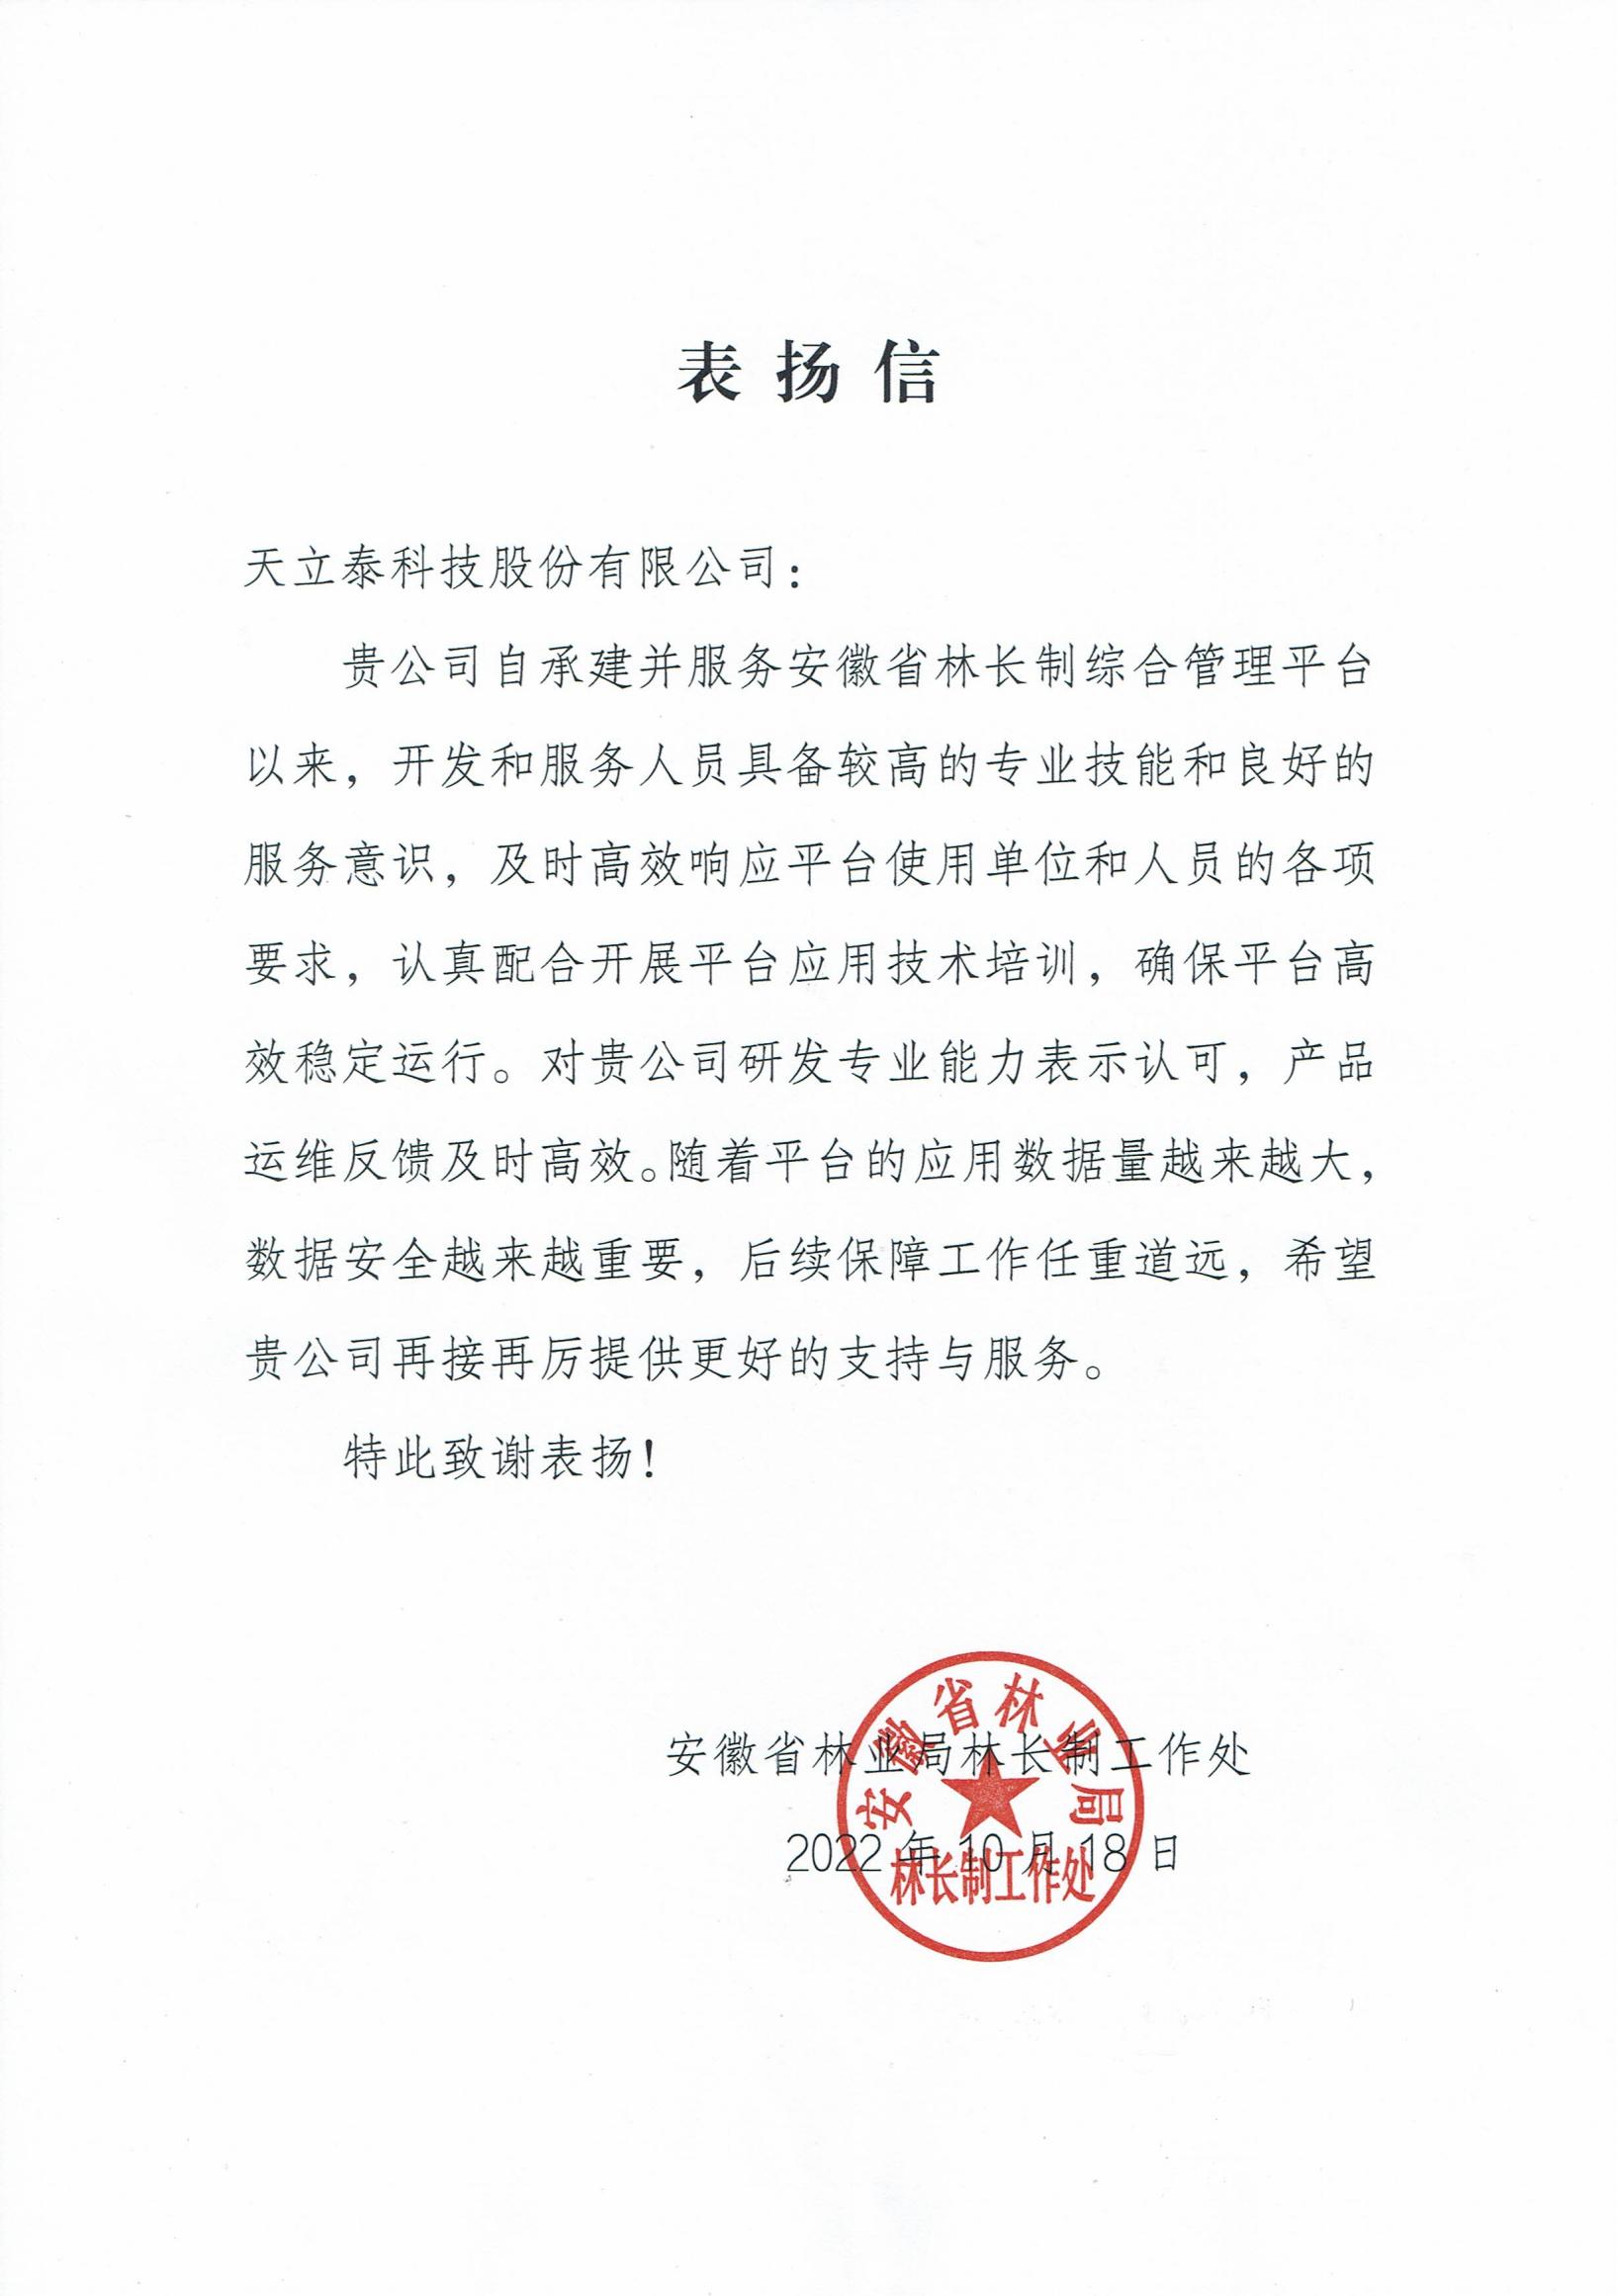 安徽省林业局-林长办表扬信20221019_00.jpg